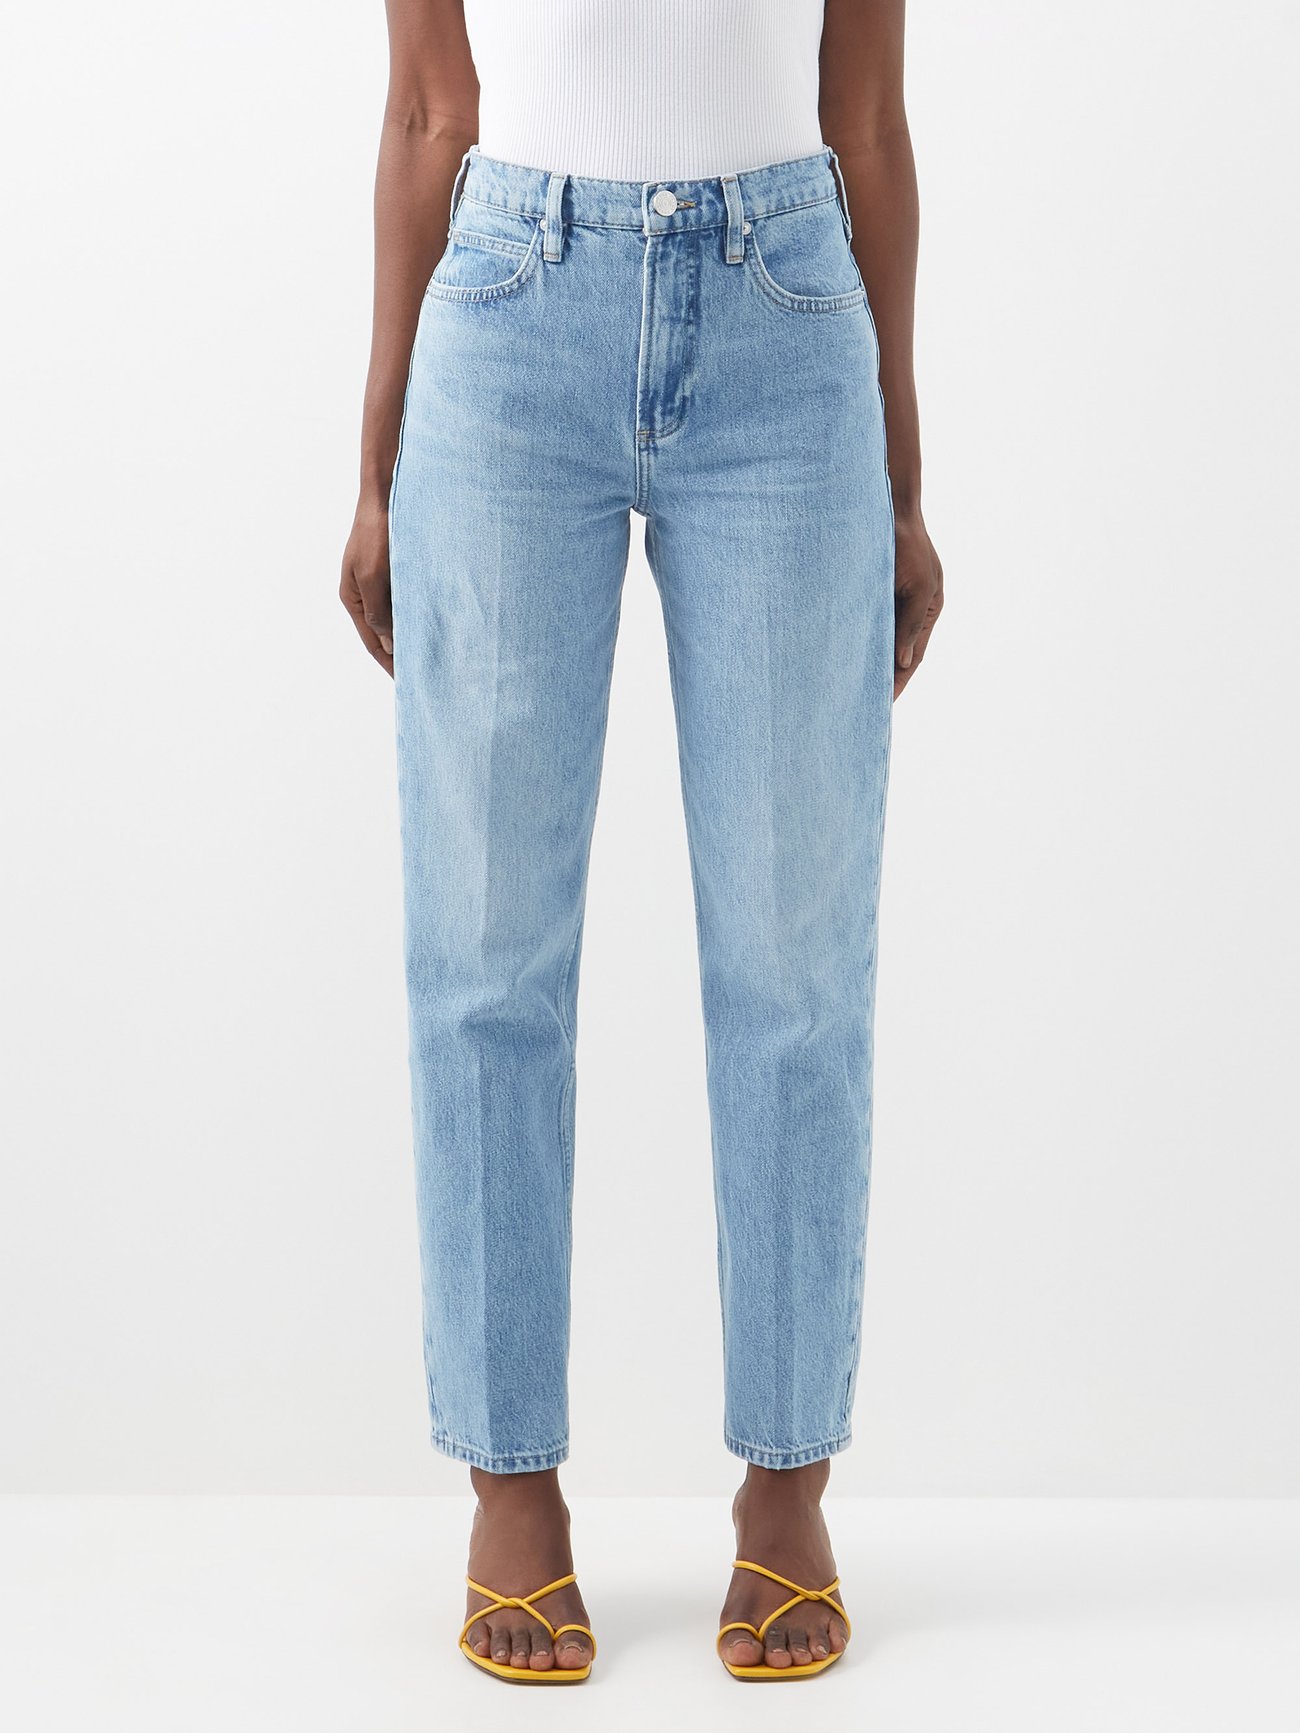 High 'n' Tight high-rise straight-leg jeans Frame